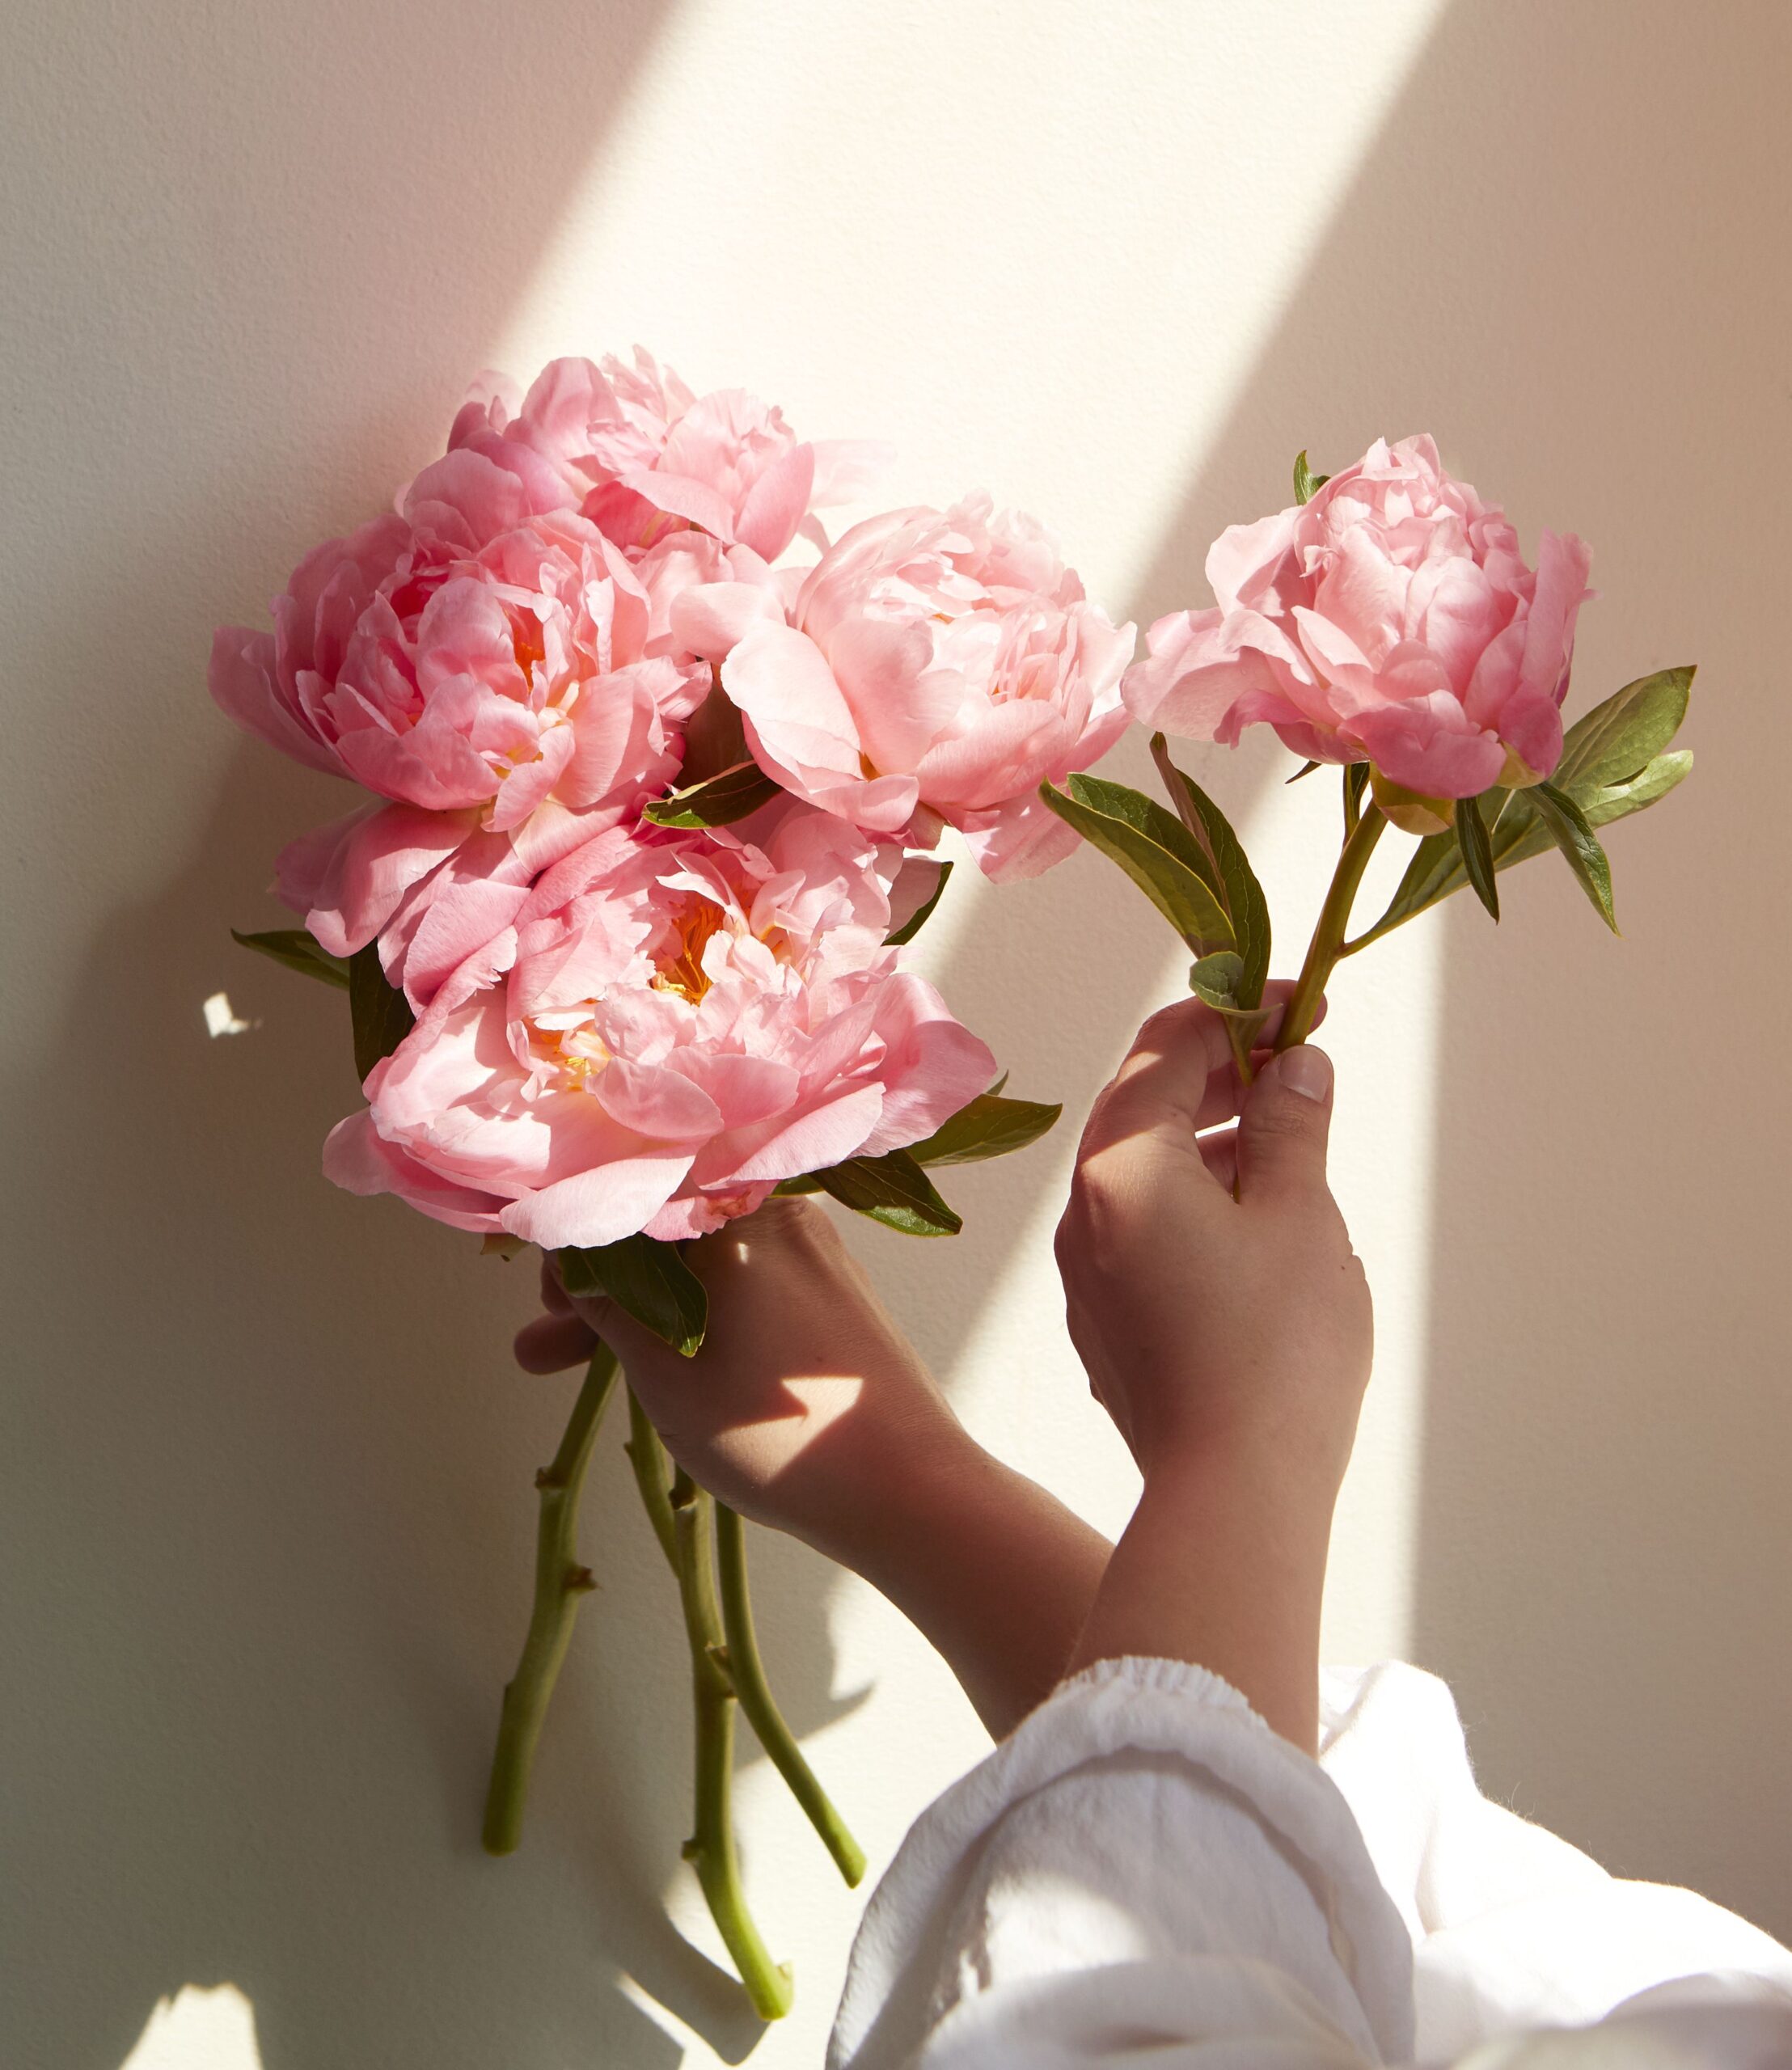 Hình nền hoa mẫu đơn cho điện thoại  Ảnh nền hoa mẫu đơn  HoaTieuvn   Amazing flowers Flowers photography Pink flowers